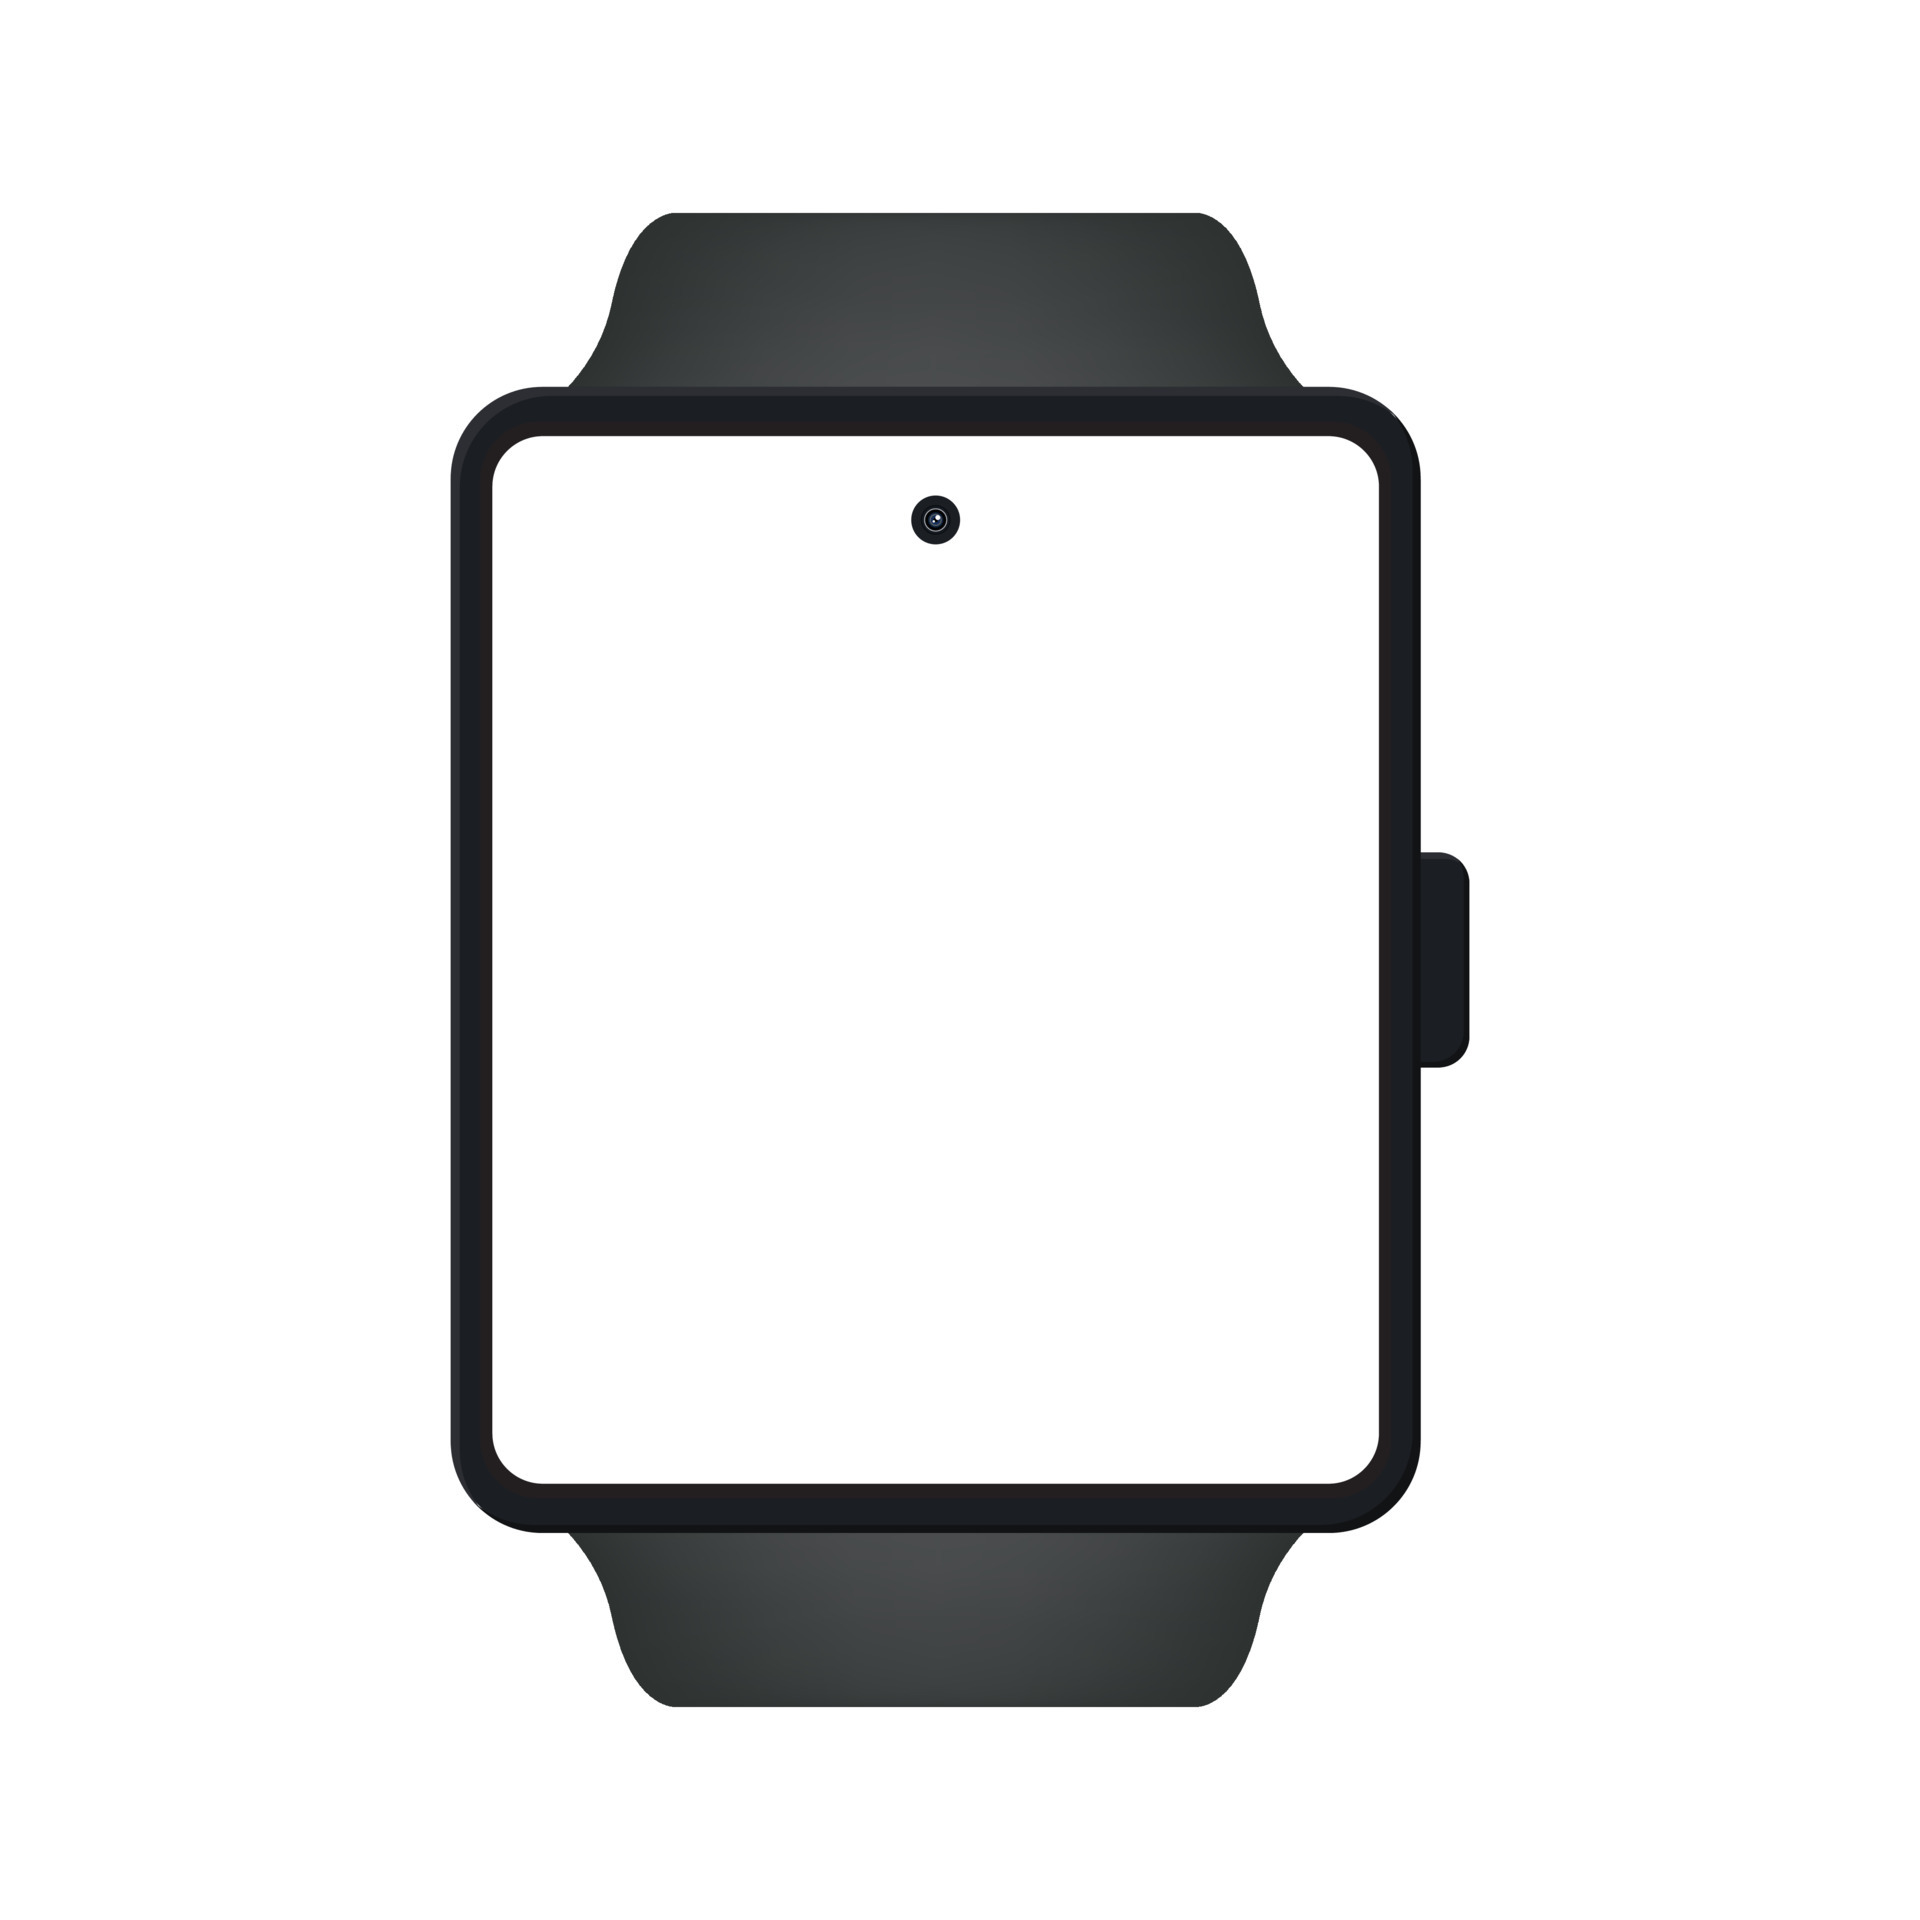 Maquete de relógio inteligente dispositivo digital com aplicativo